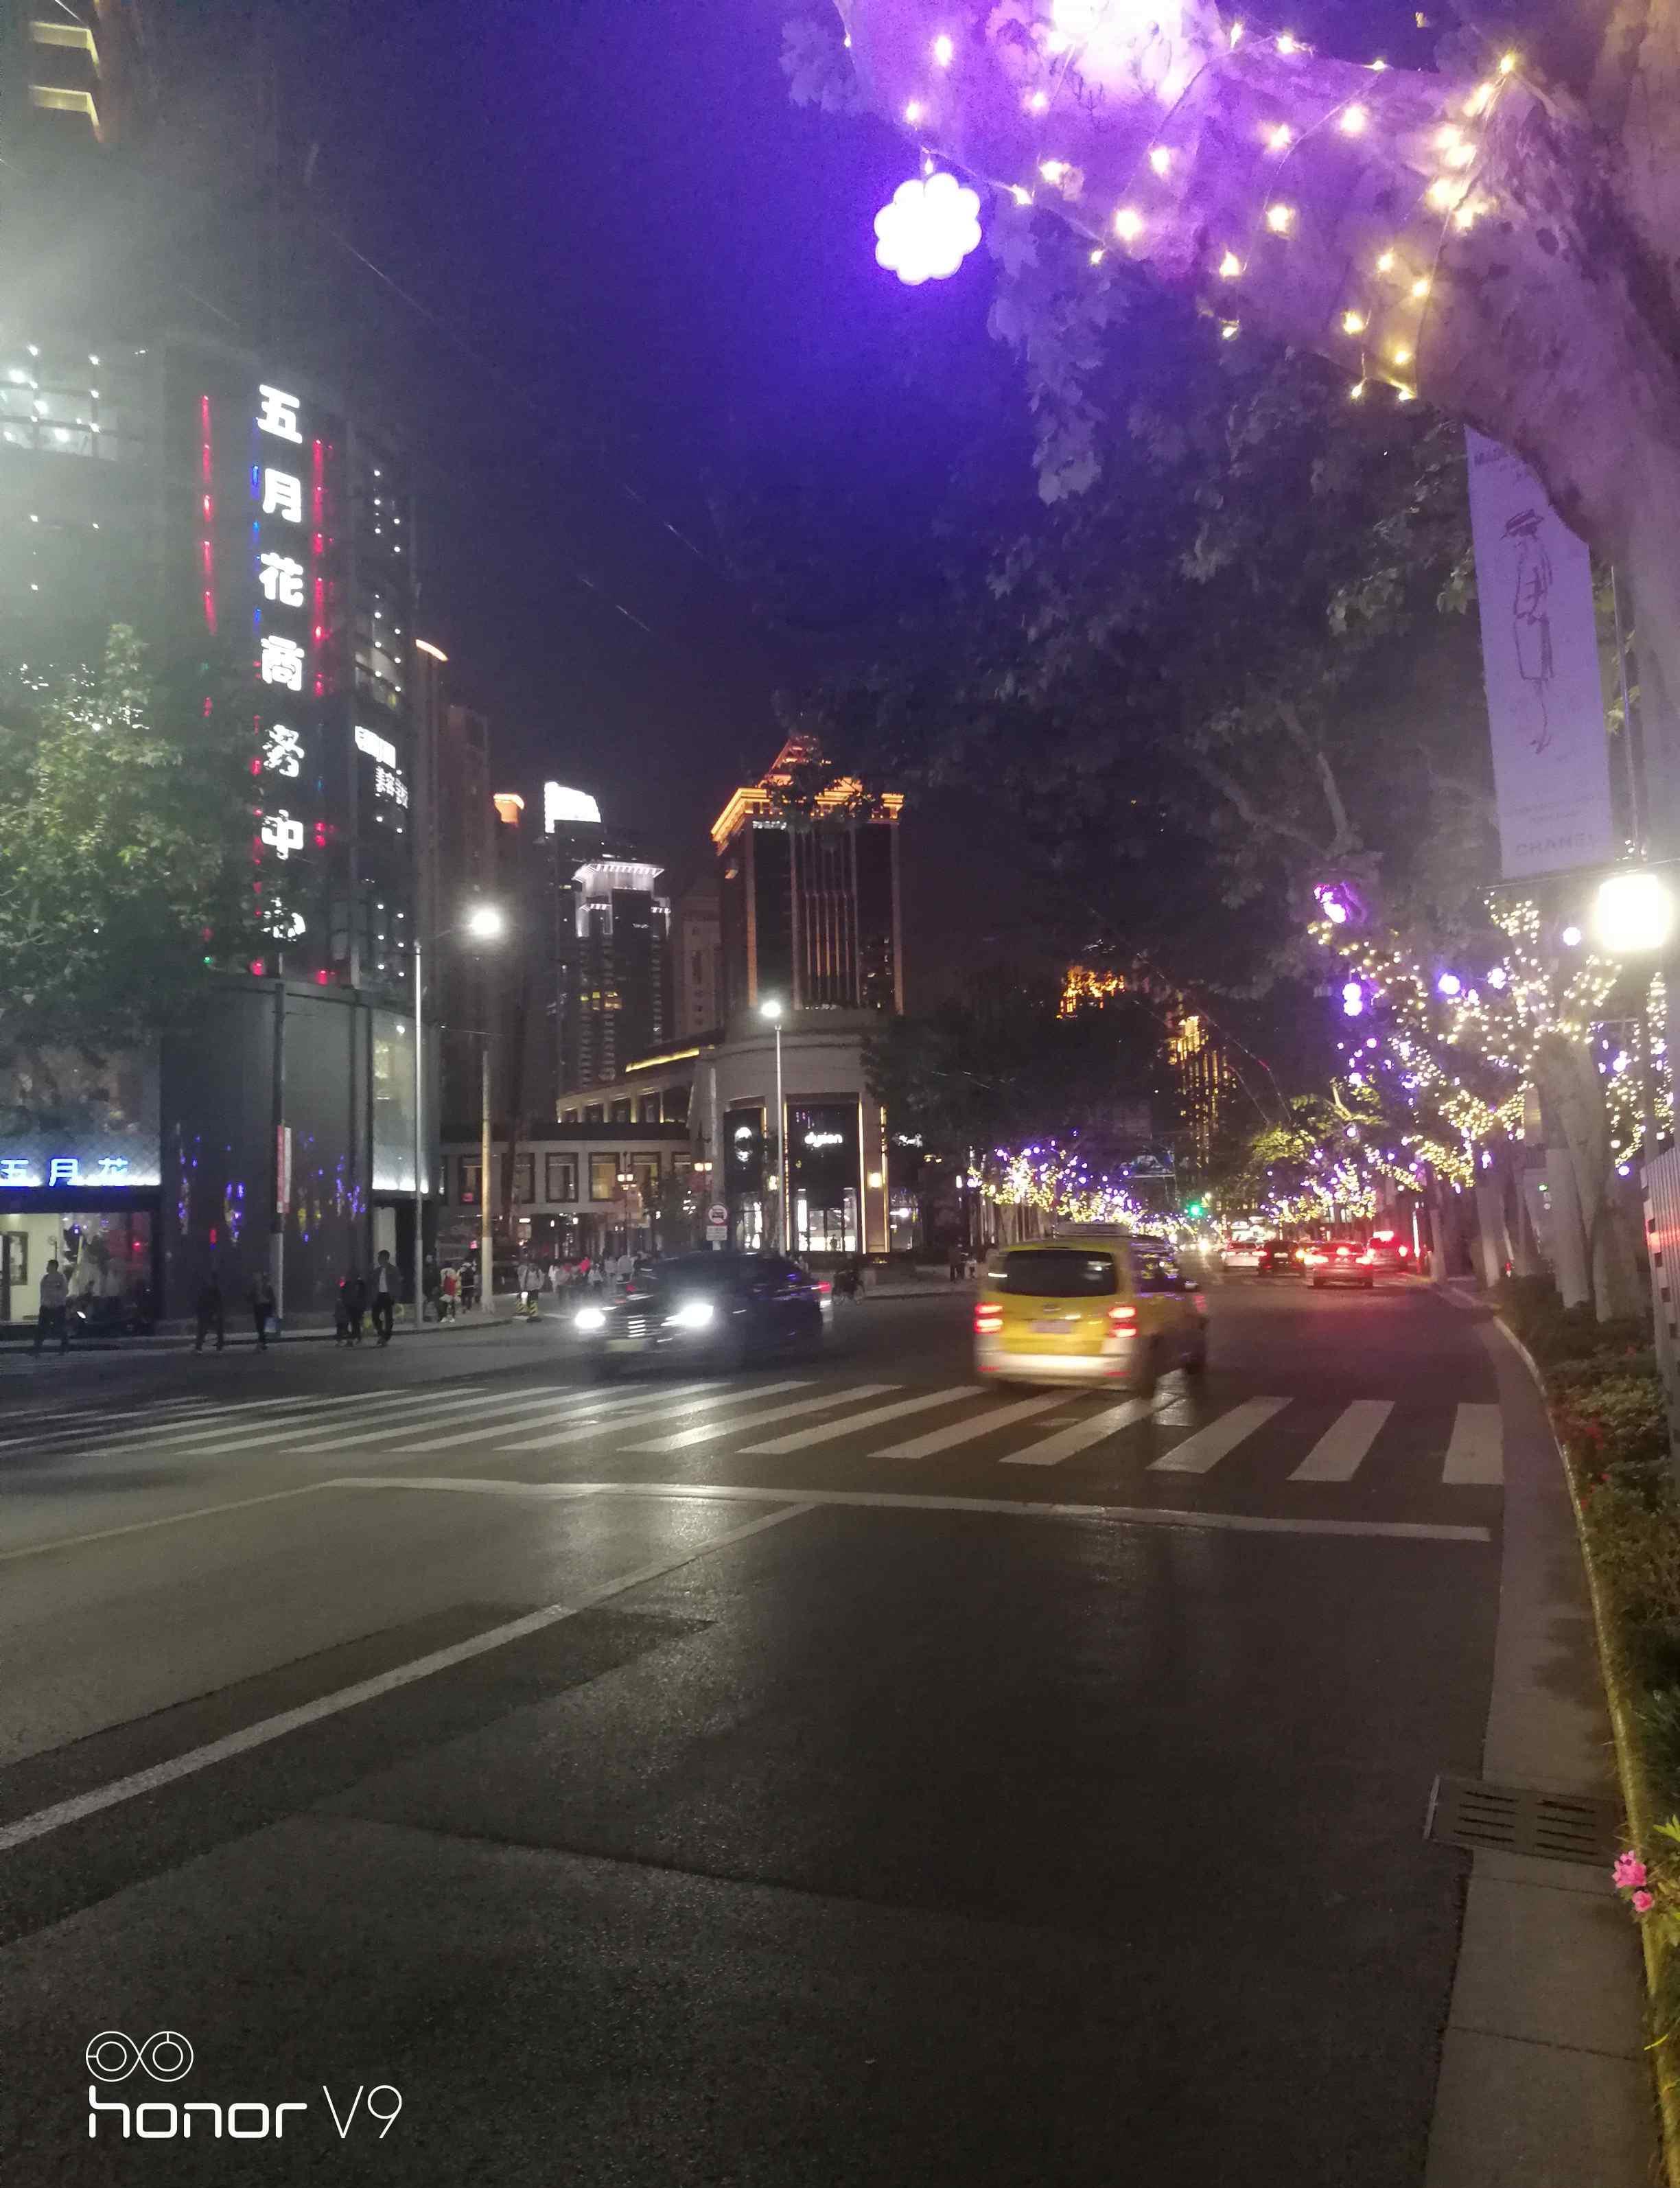 上海南京西路的夜景很美!放松心情!